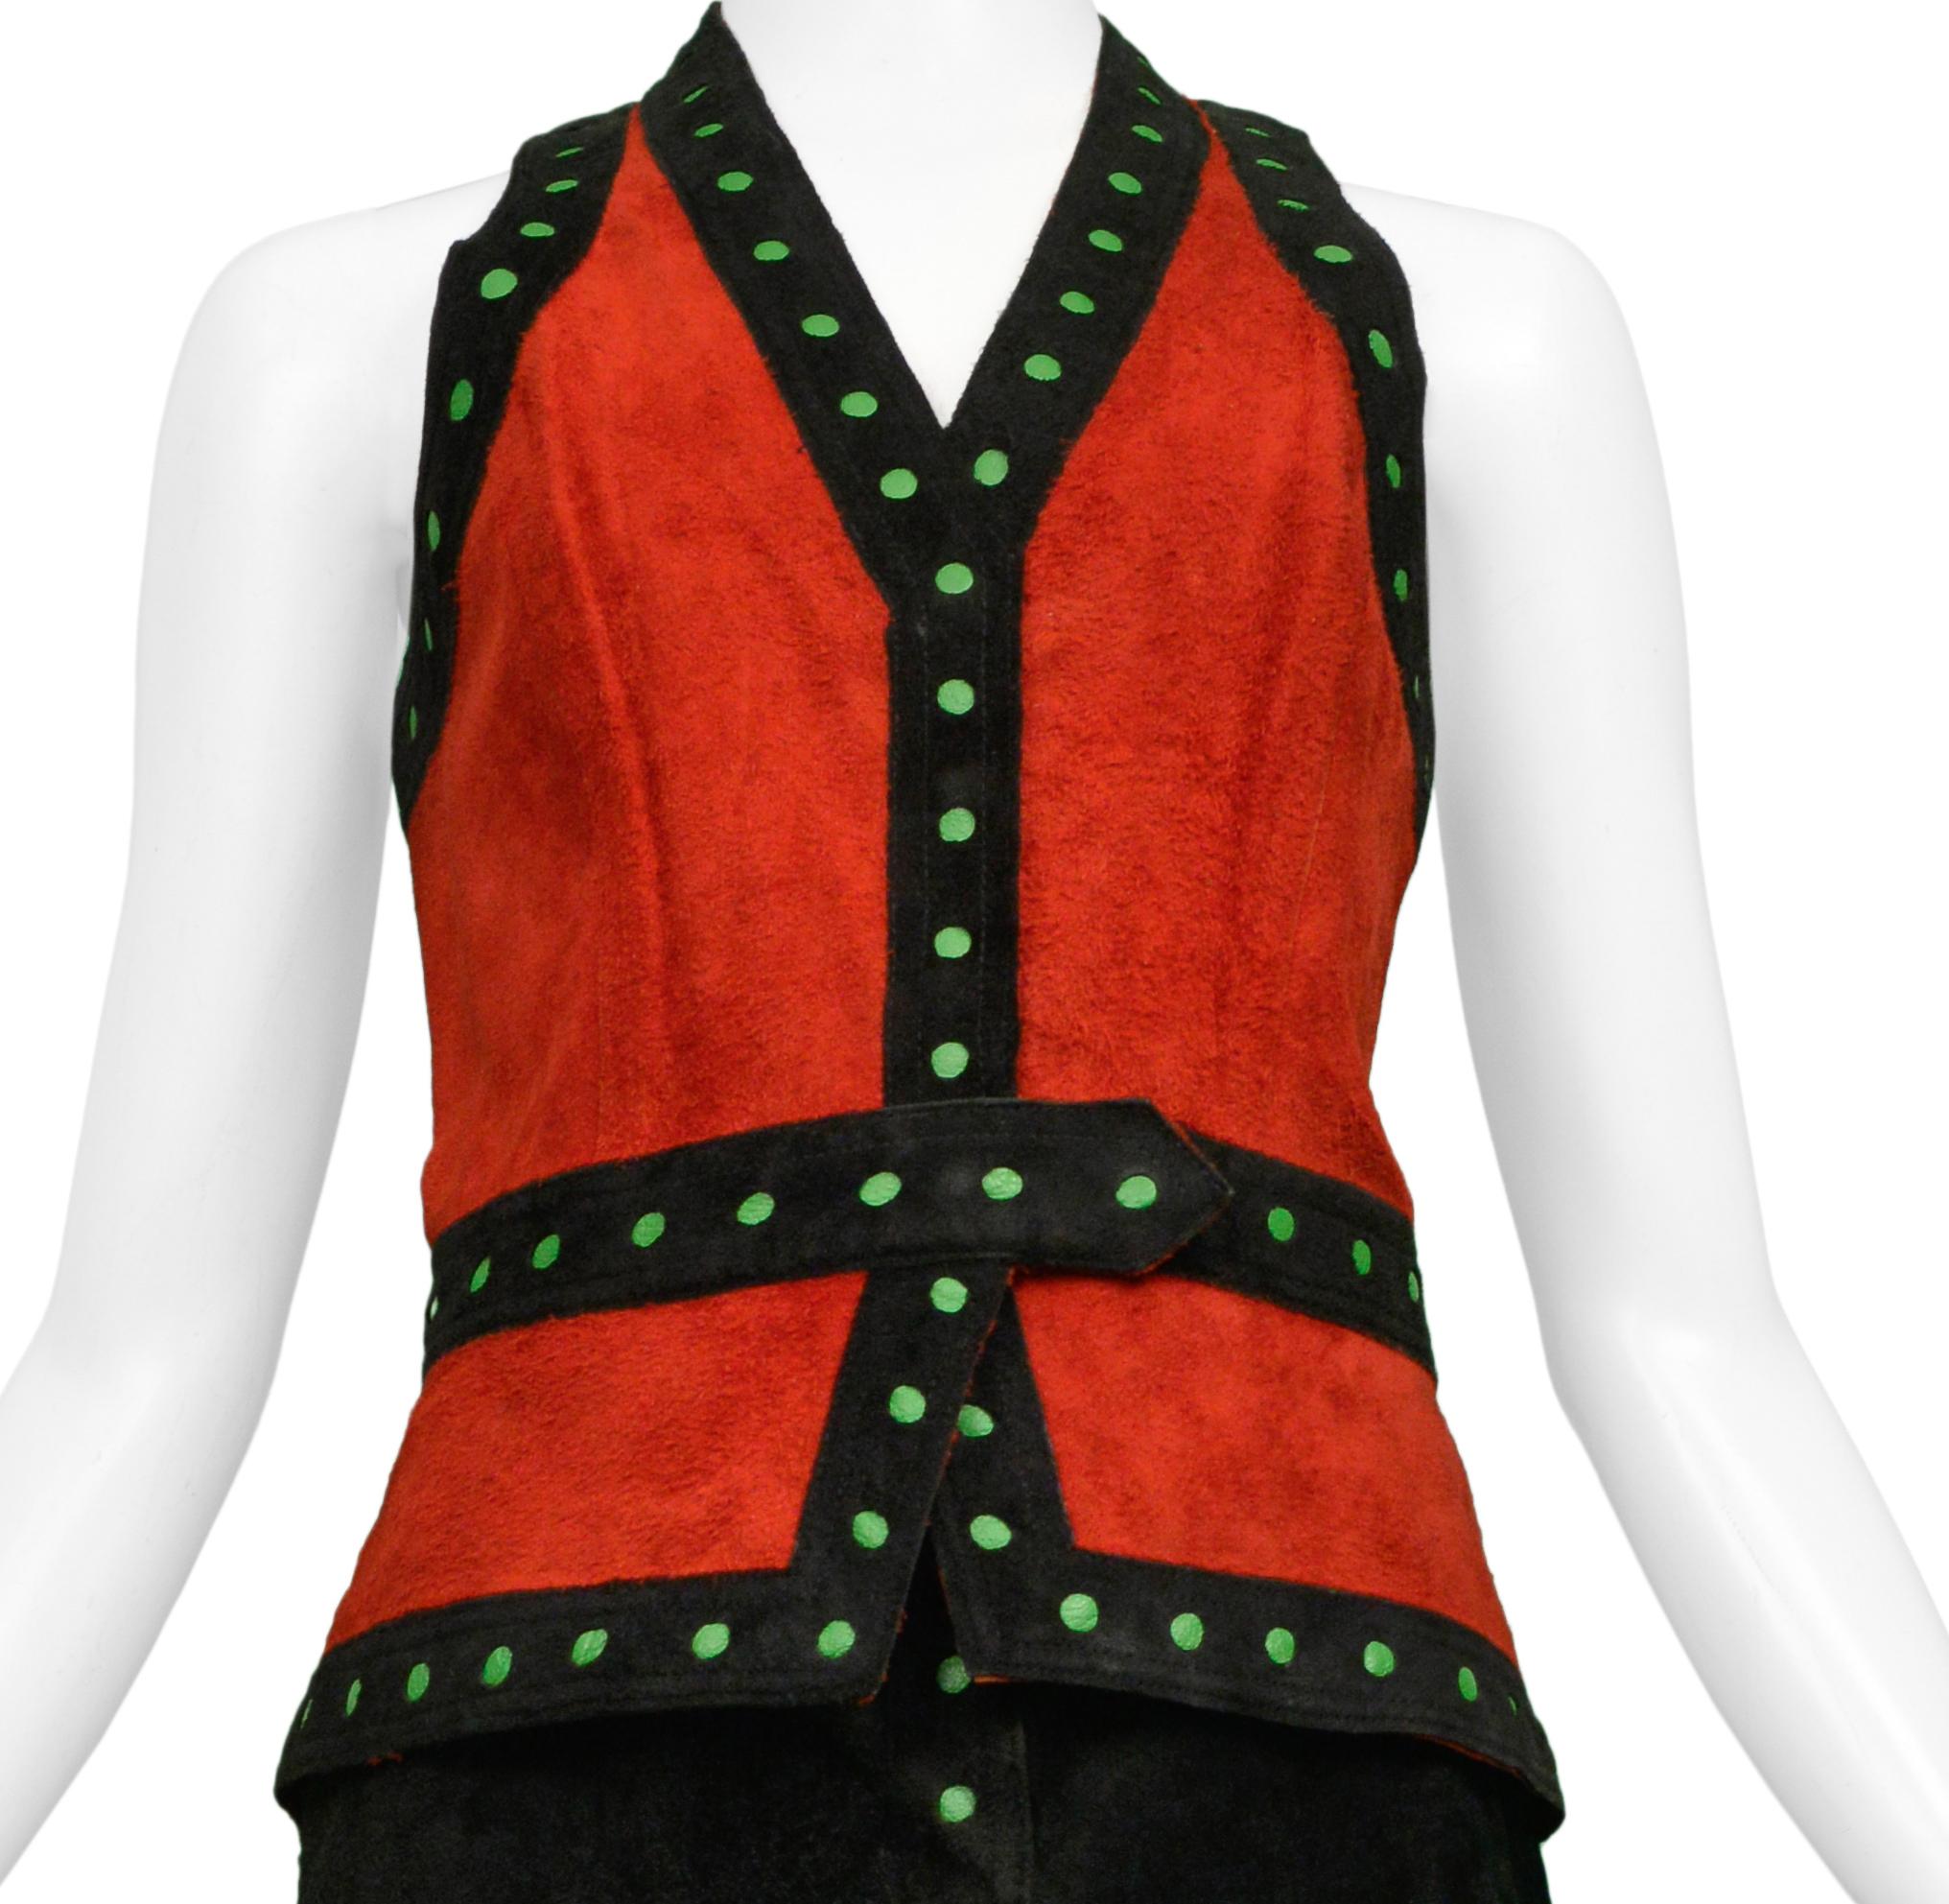 Resurrection Vintage a le plaisir de vous proposer un ensemble veste et jupe vintage en daim noir et rouge Giorgio Sant Angelo comprenant une veste rouge avec une bordure de points noirs et verts, et une jupe longue enveloppante en daim noir avec